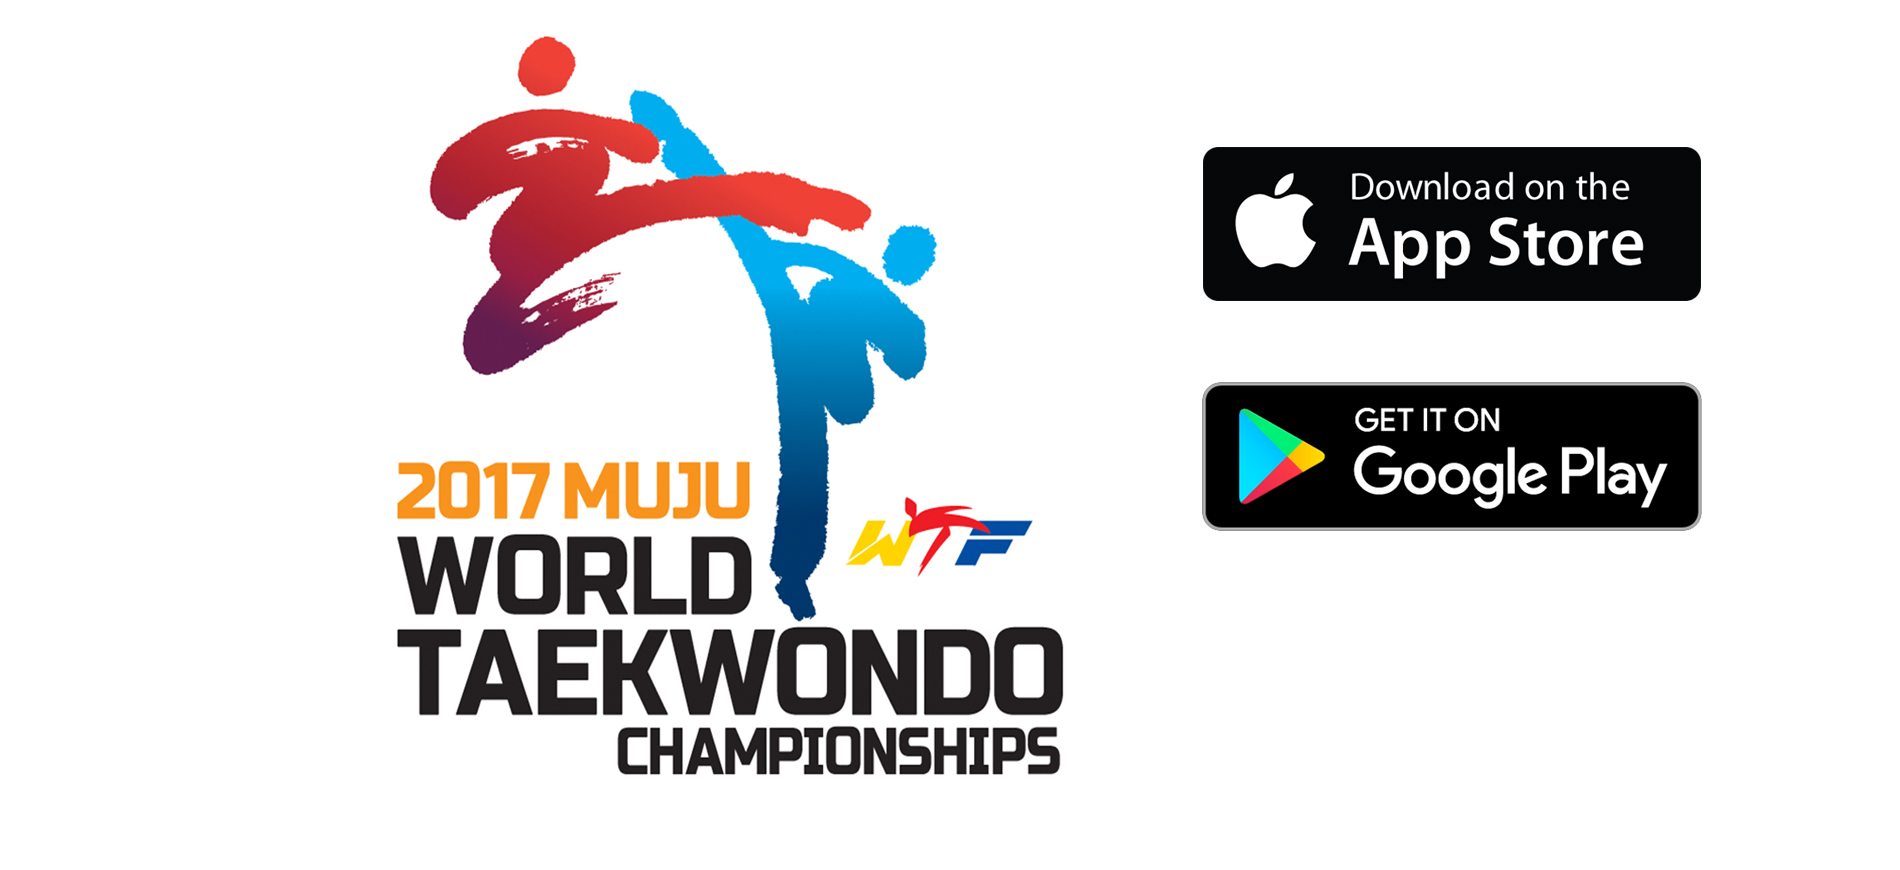 World Taekwondo Championships: sorteggi, risultati e live streaming